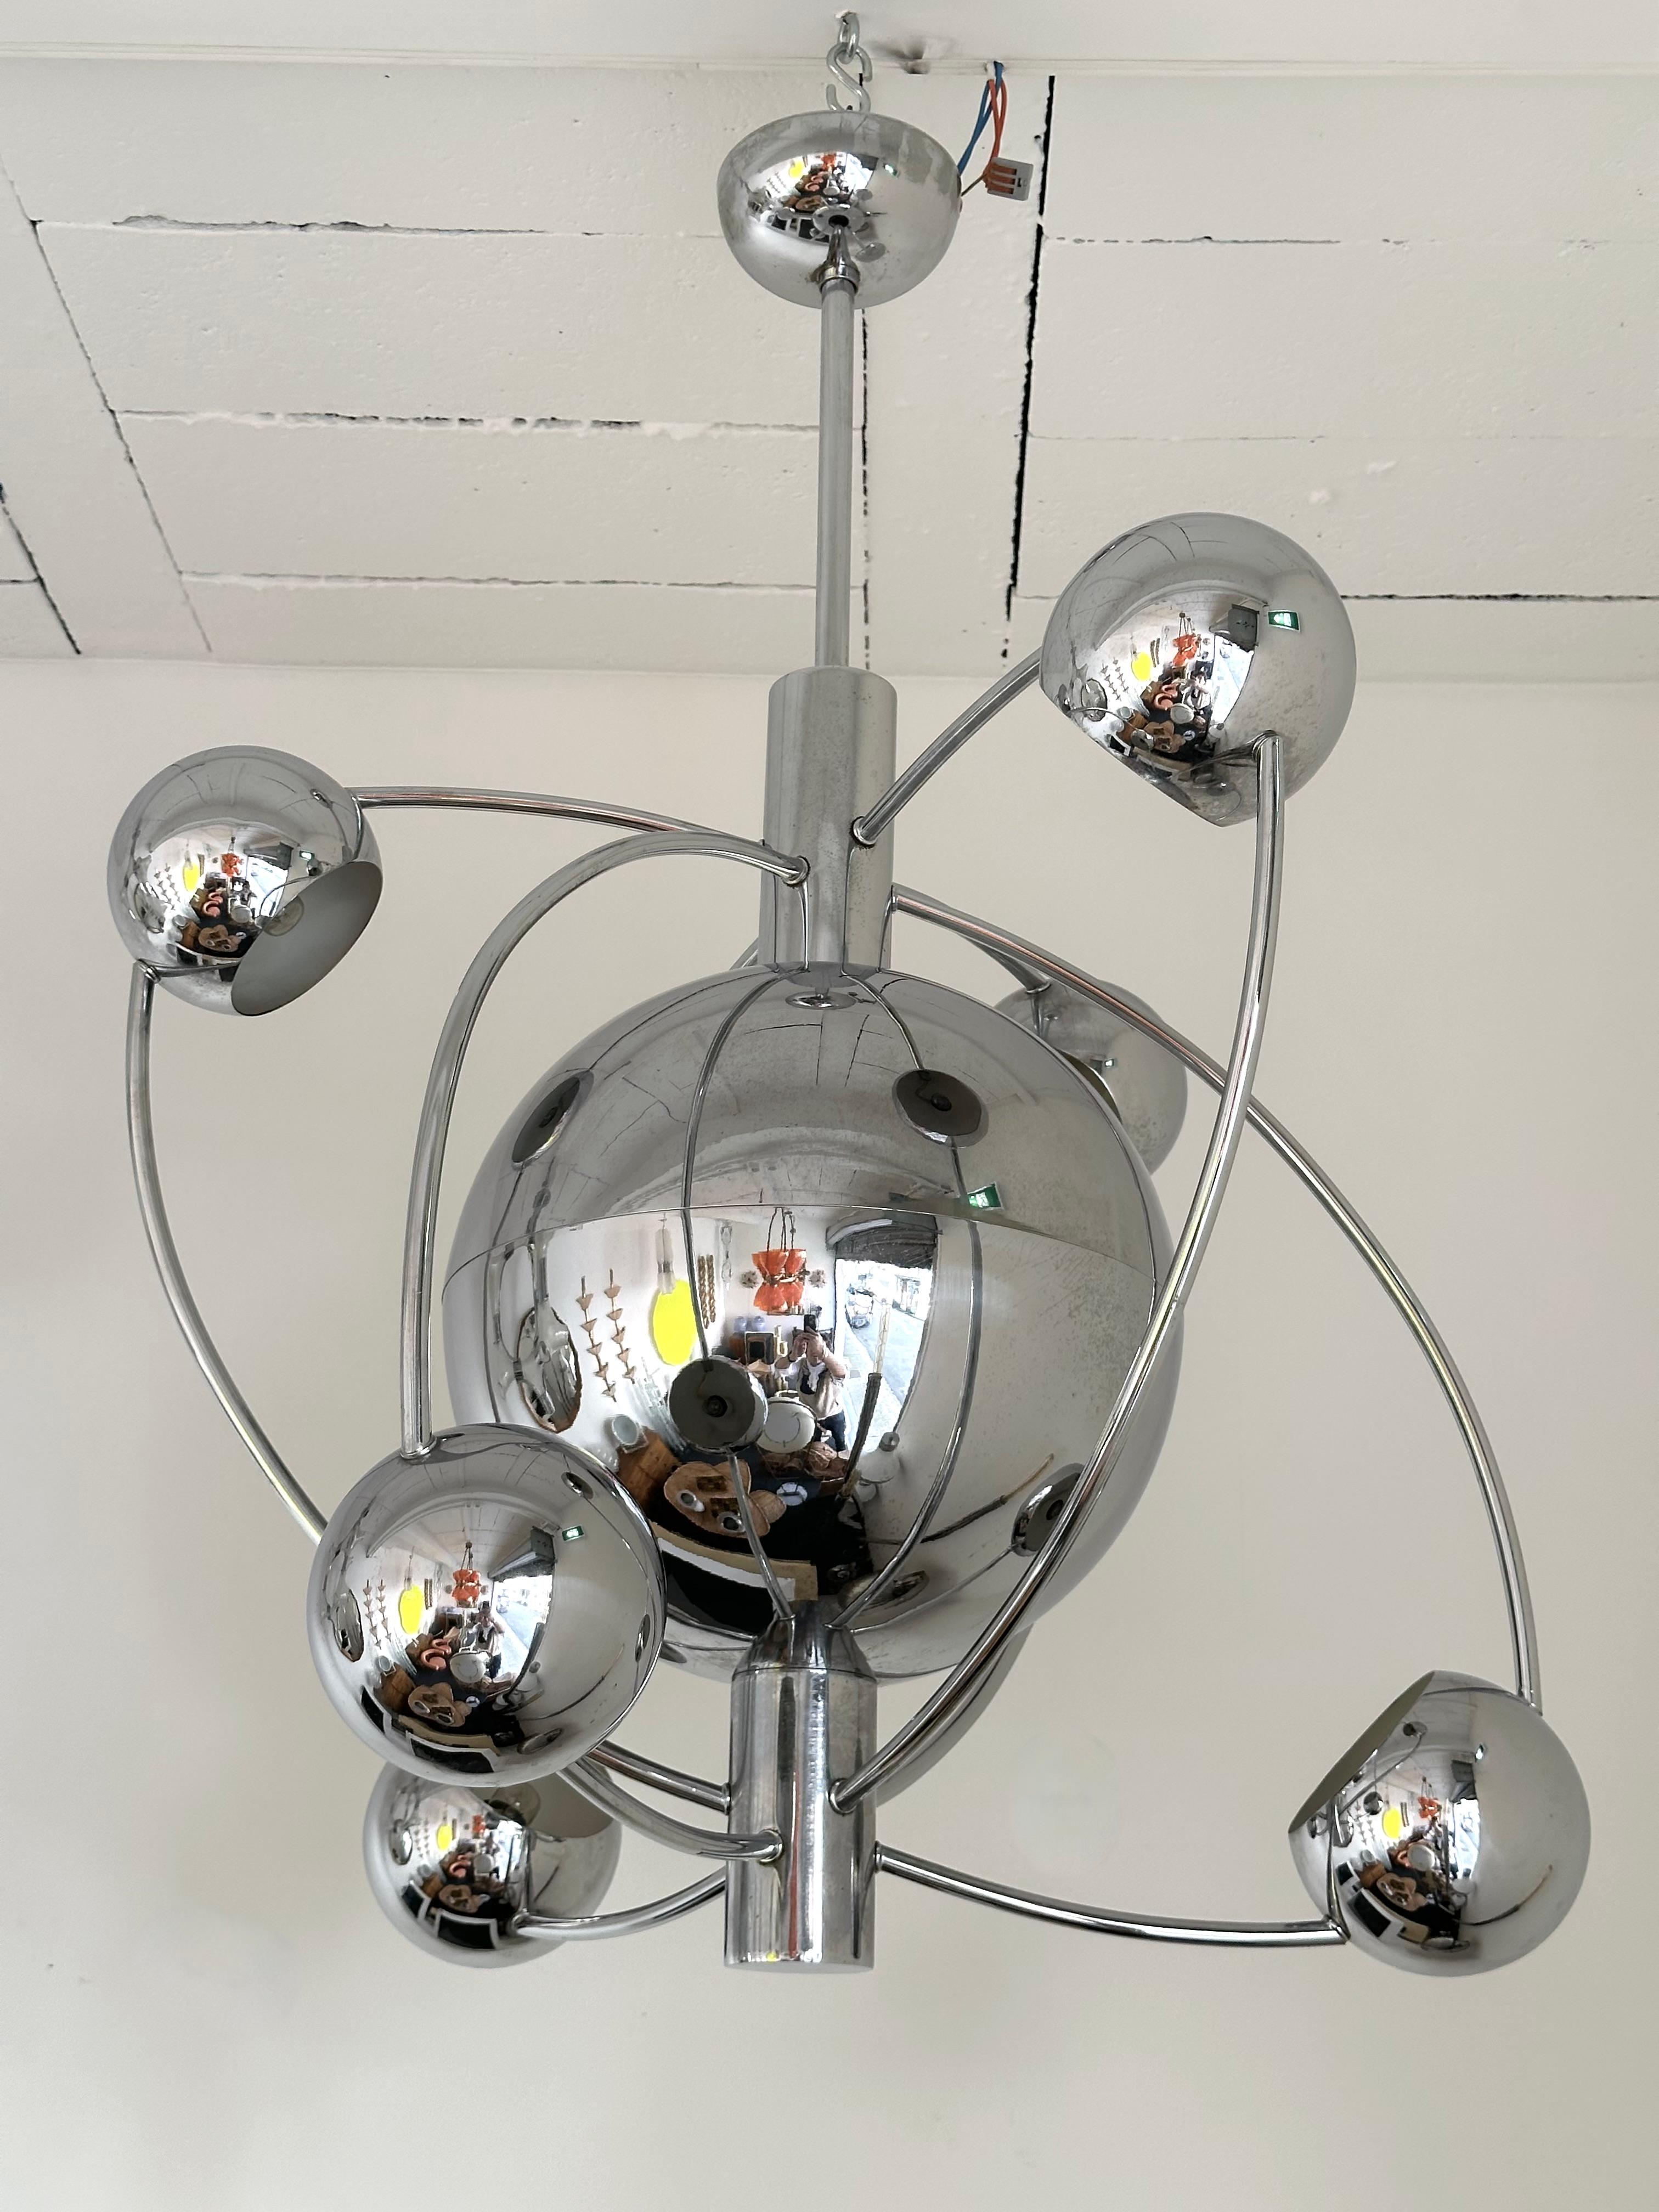 Astro Satellit Sputnik Kronleuchter Decke Pendelleuchte aus verchromtem Metall, sechs-Punkt-Licht um die zentrale Kugel, Design zurückzuführen auf den Editor Hersteller Reggiani. Ein typisches italienisches Design aus der Zeit der Mitte des